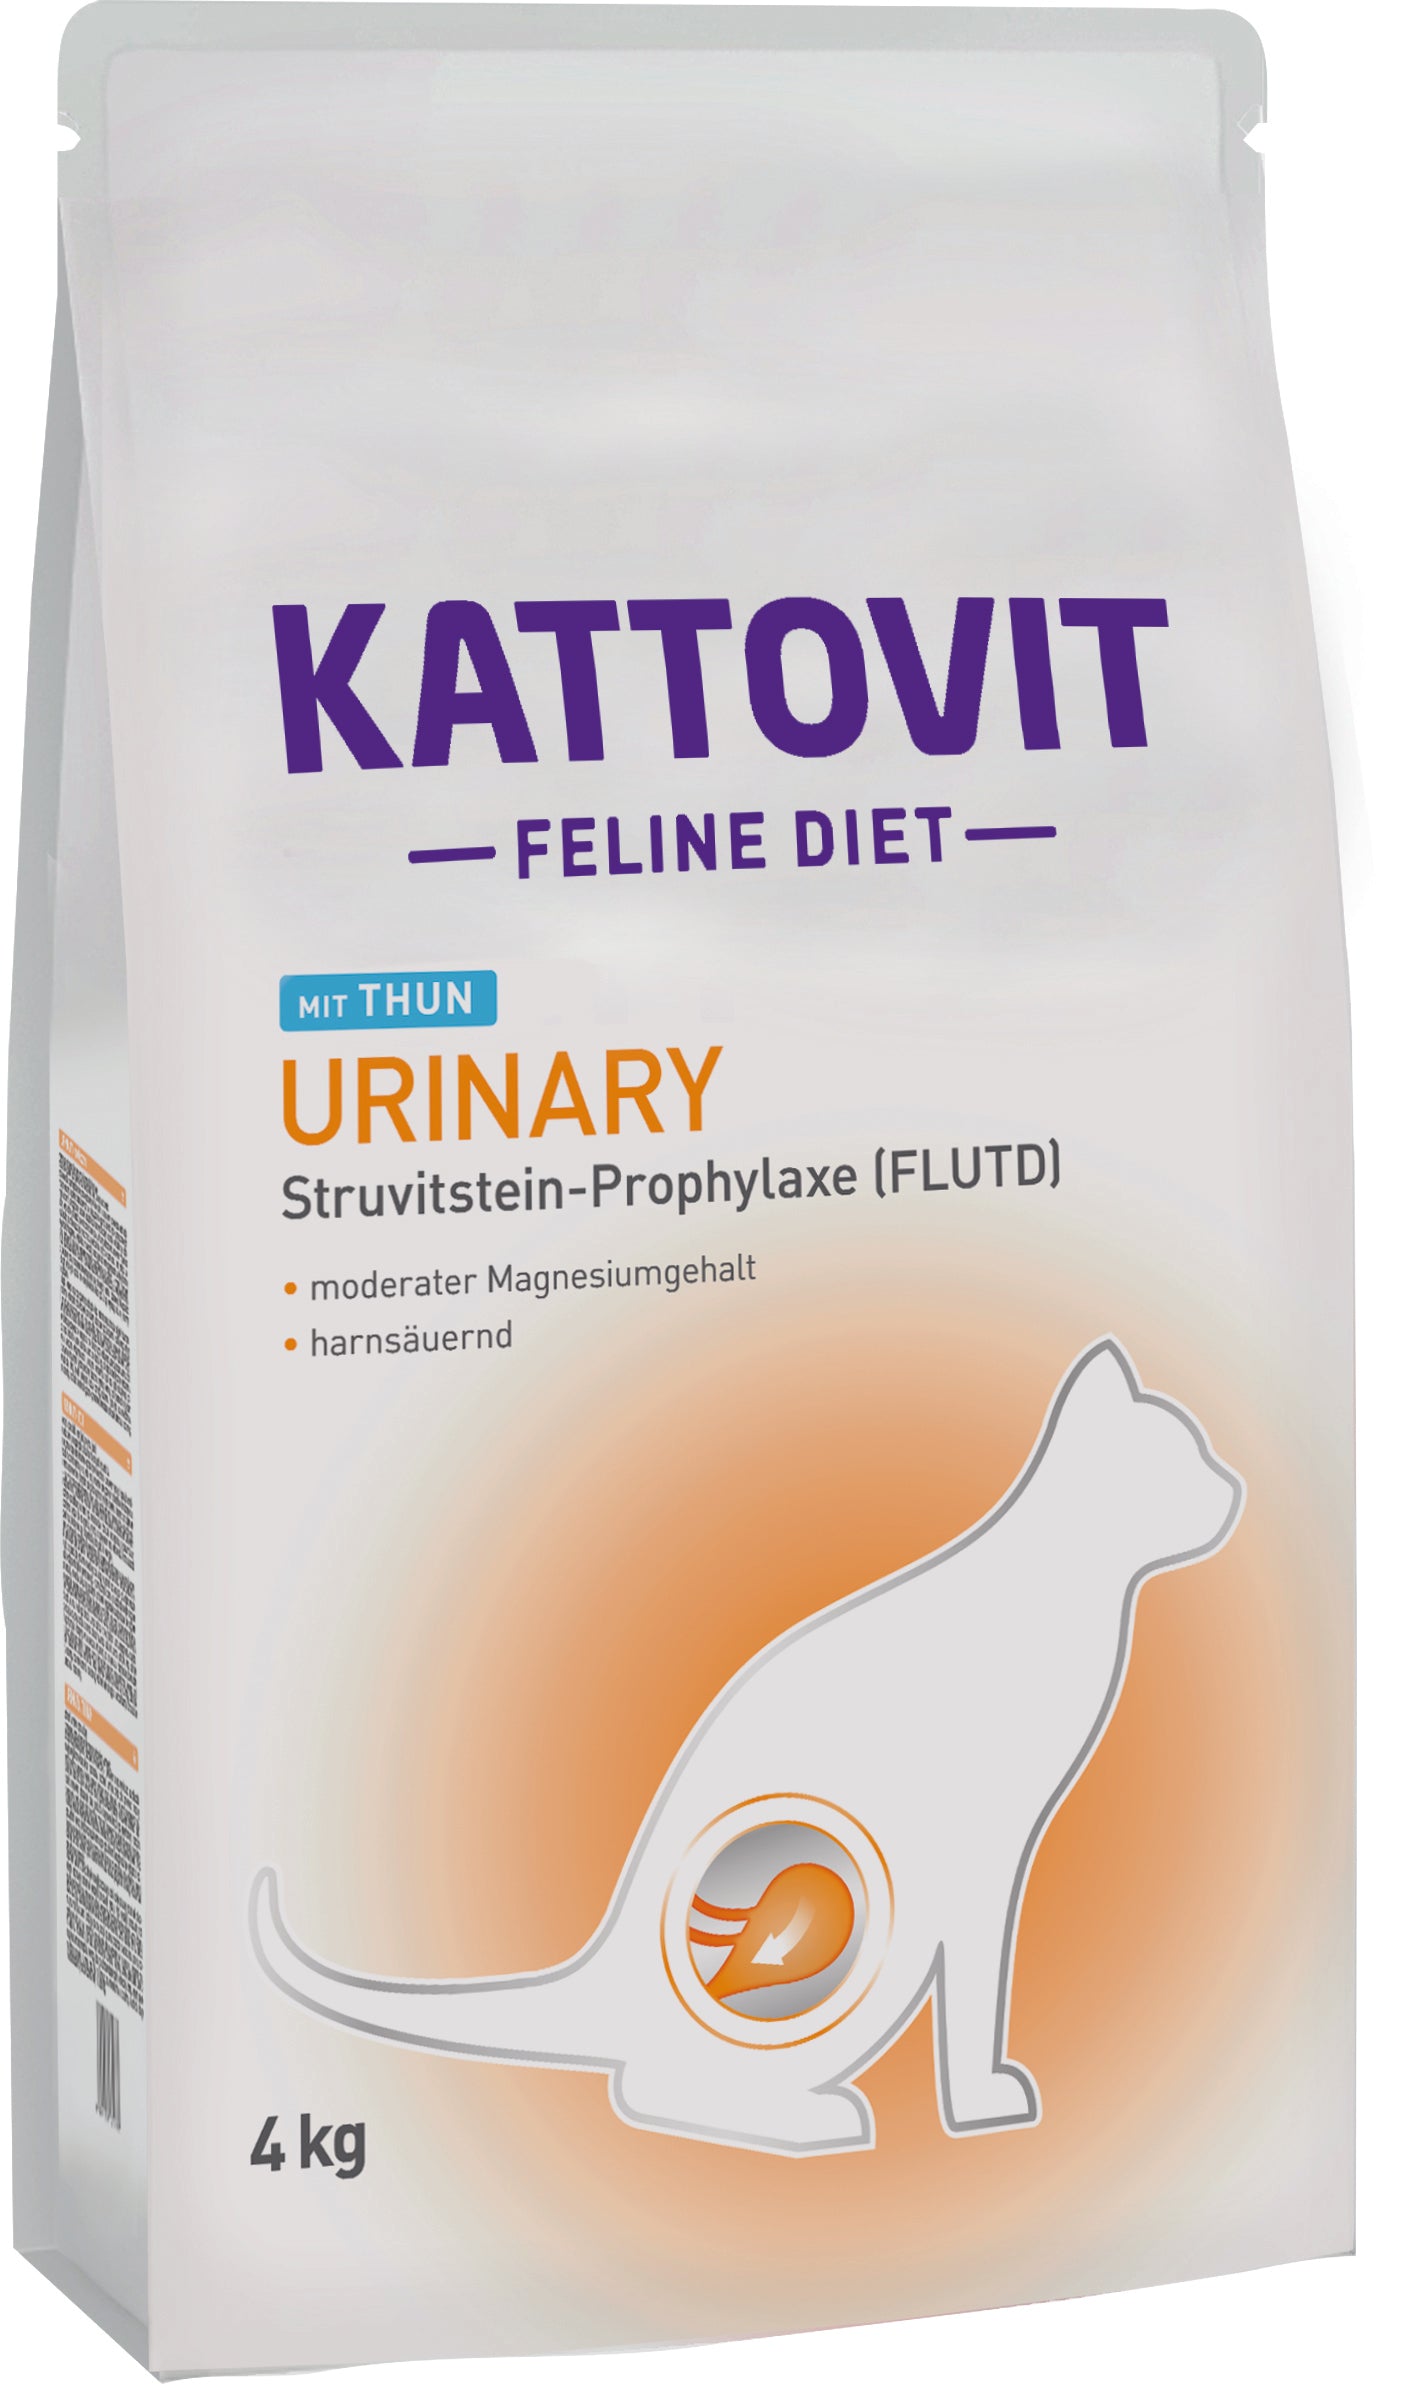 Artikel mit dem Namen Kattovit Feline Diet Urinary Thunfisch Trockenfutter im Shop von zoo.de , dem Onlineshop für nachhaltiges Hundefutter und Katzenfutter.